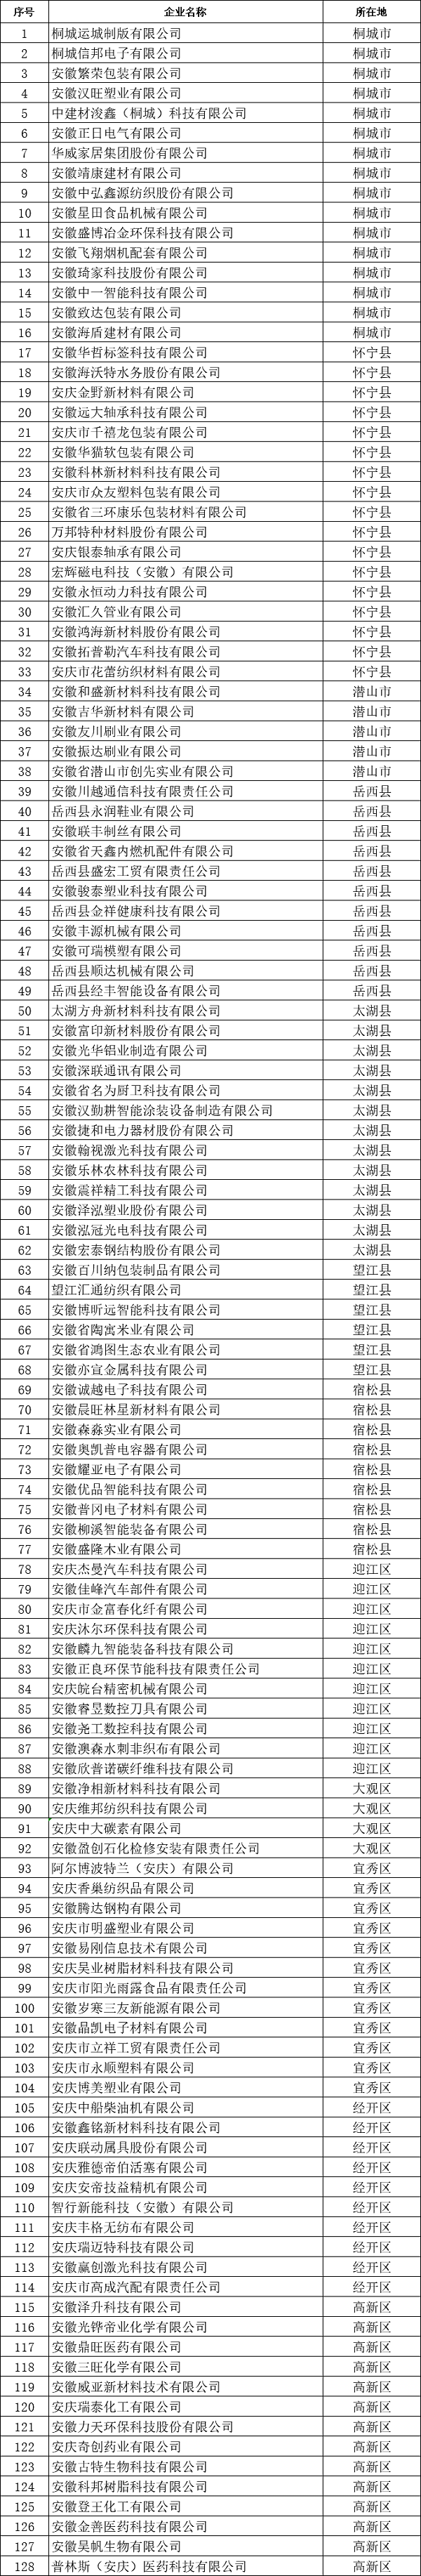 安庆市创新型中小企业名单